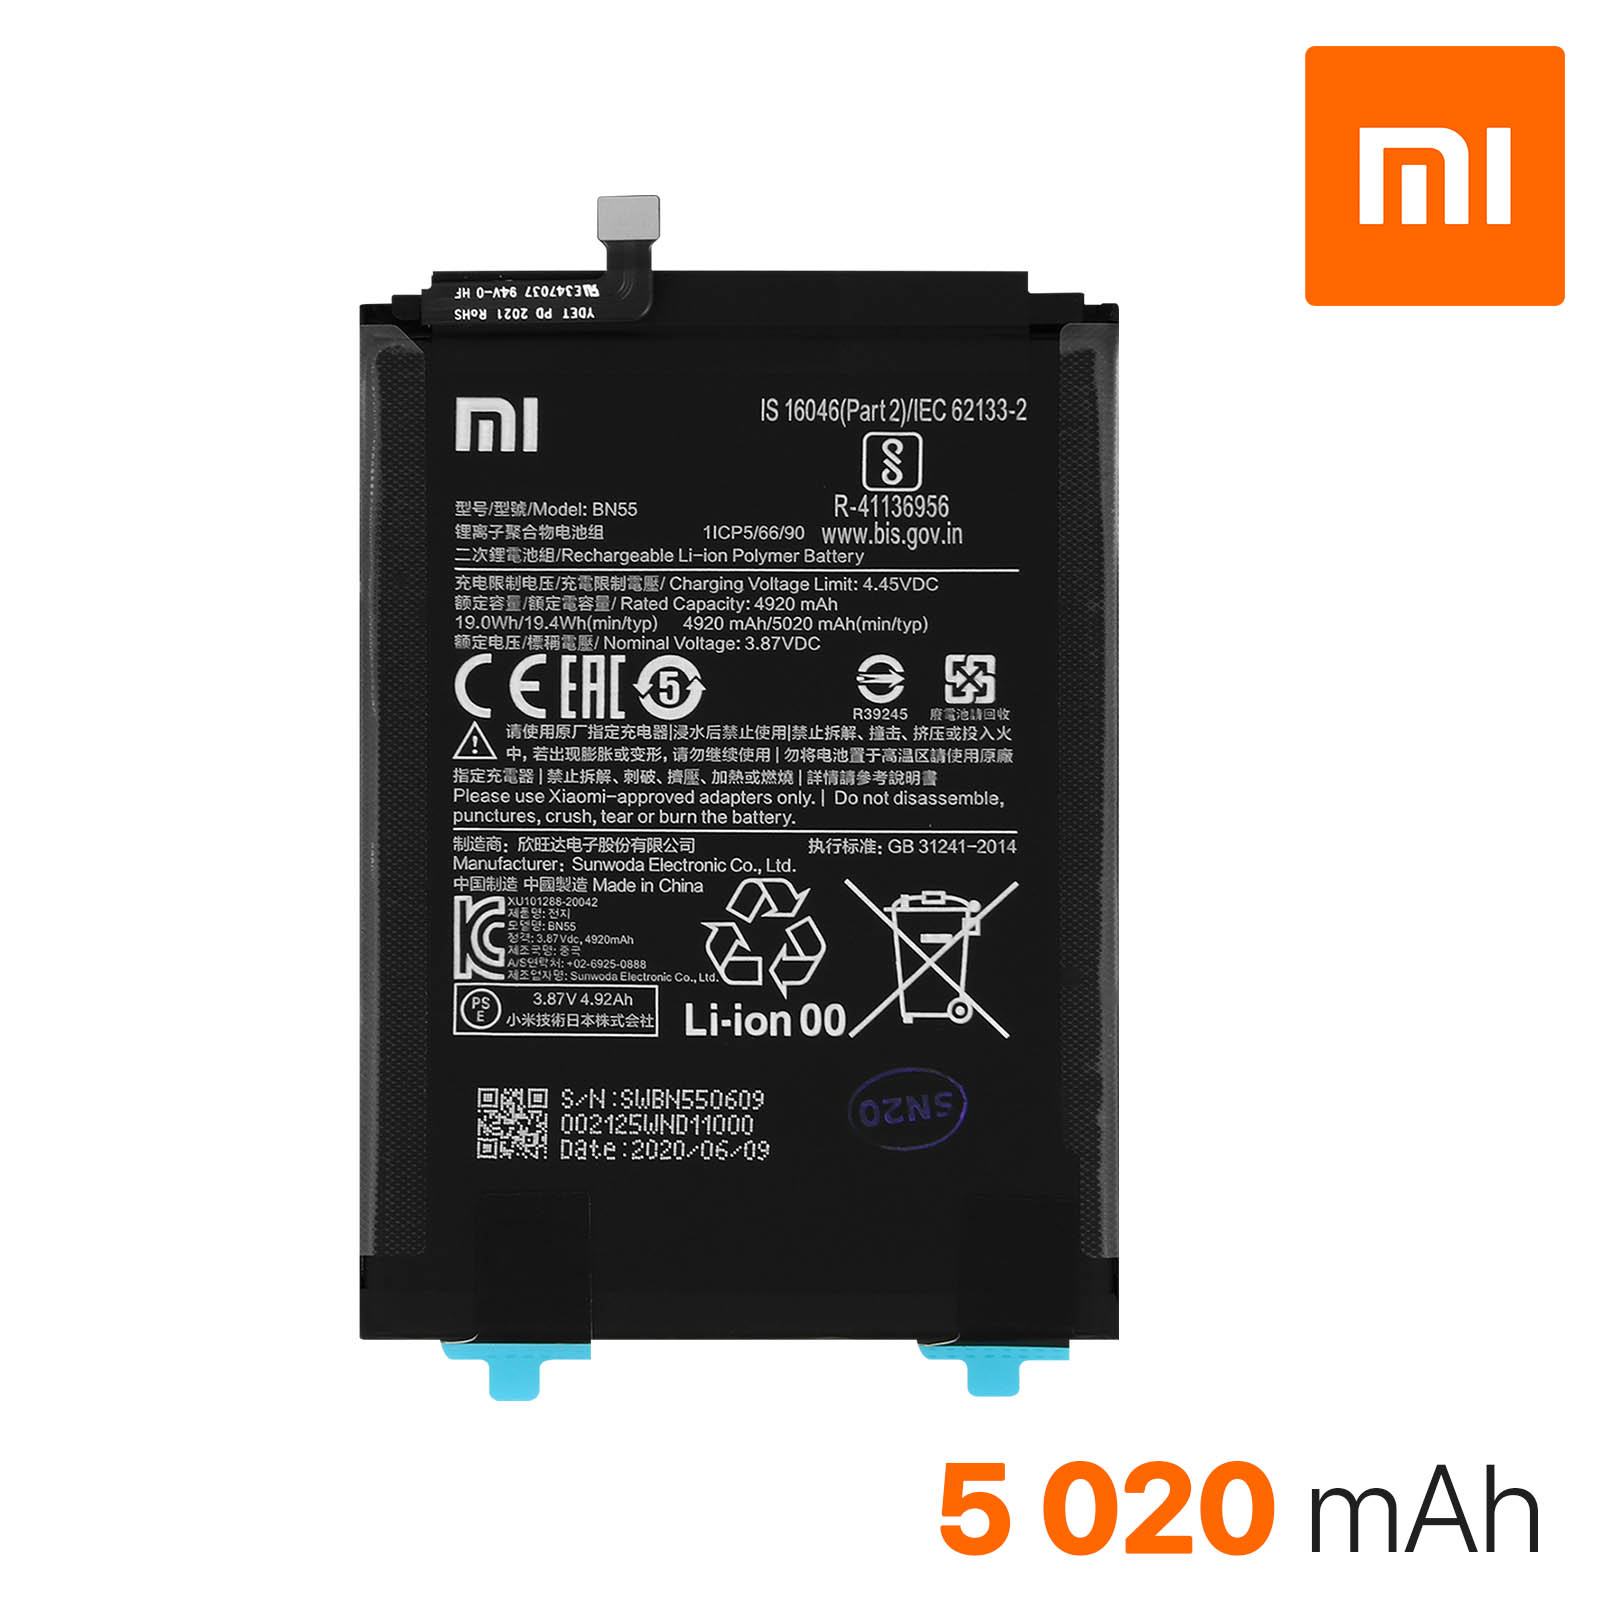 Batterie compatible avec Xiaomi Redmi Note 9S MI BN55 5020 mAh haute capacité avec kit de démontage inclus 